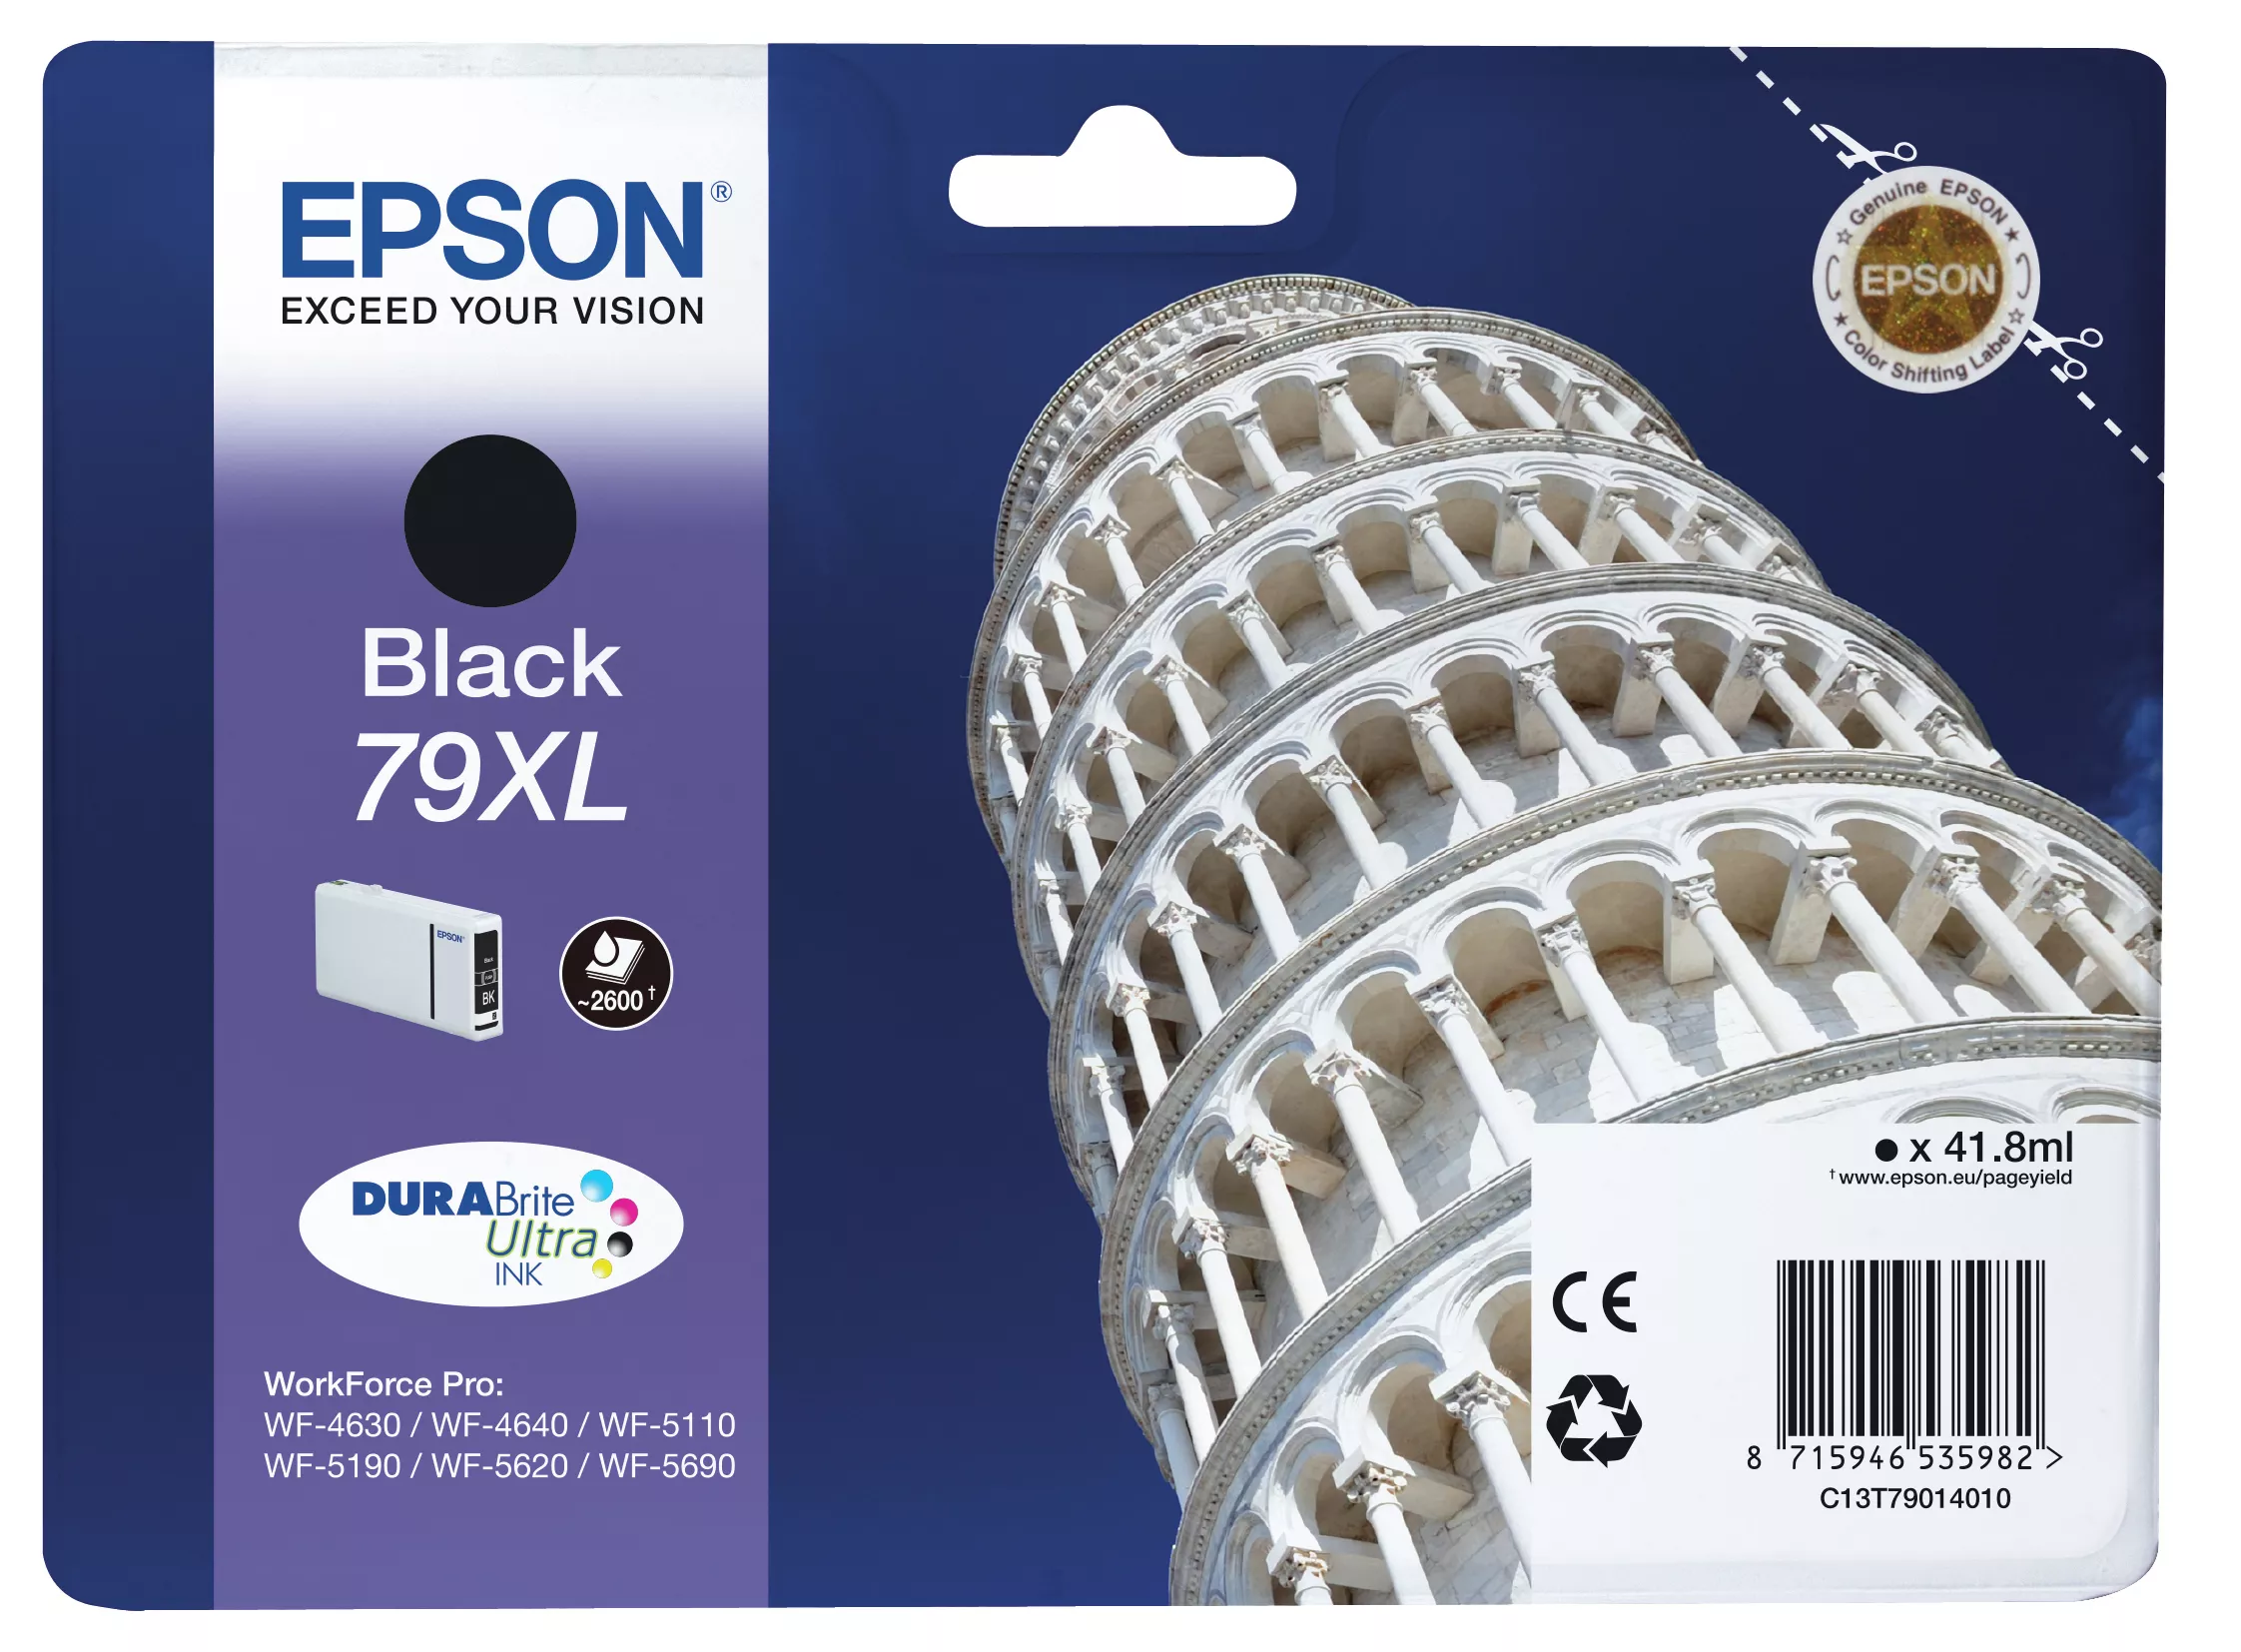 Achat EPSON 79XL cartouche dencre noir haute capacité 41.8ml 2 - 8715946535982